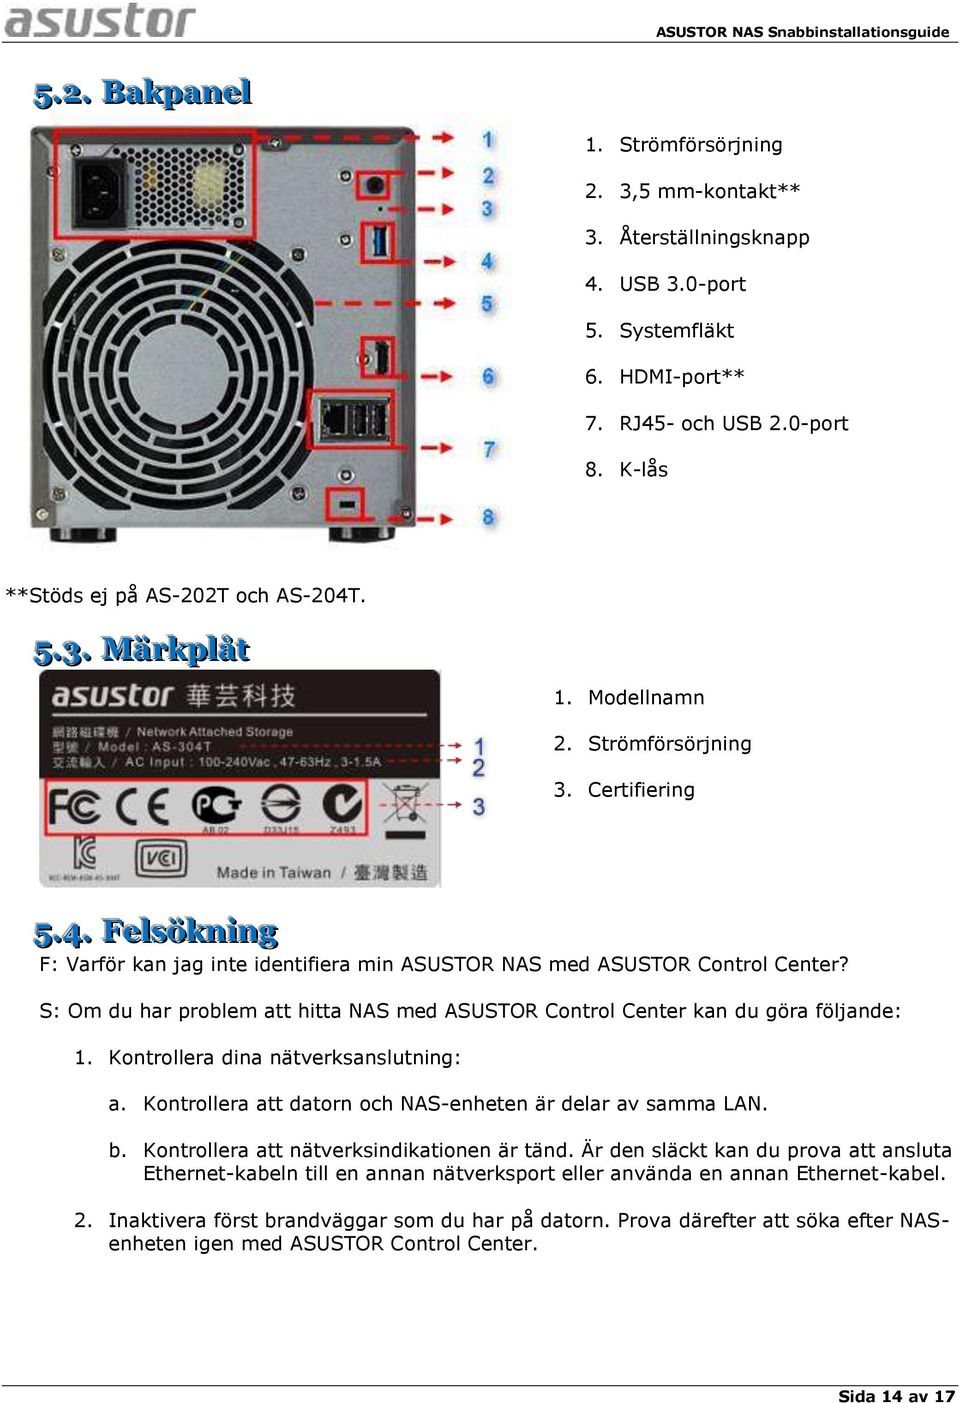 S: Om du har problem att hitta NAS med ASUSTOR Control Center kan du göra följande: 1. Kontrollera dina nätverksanslutning: a. Kontrollera att datorn och NAS-enheten är delar av samma LAN. b.